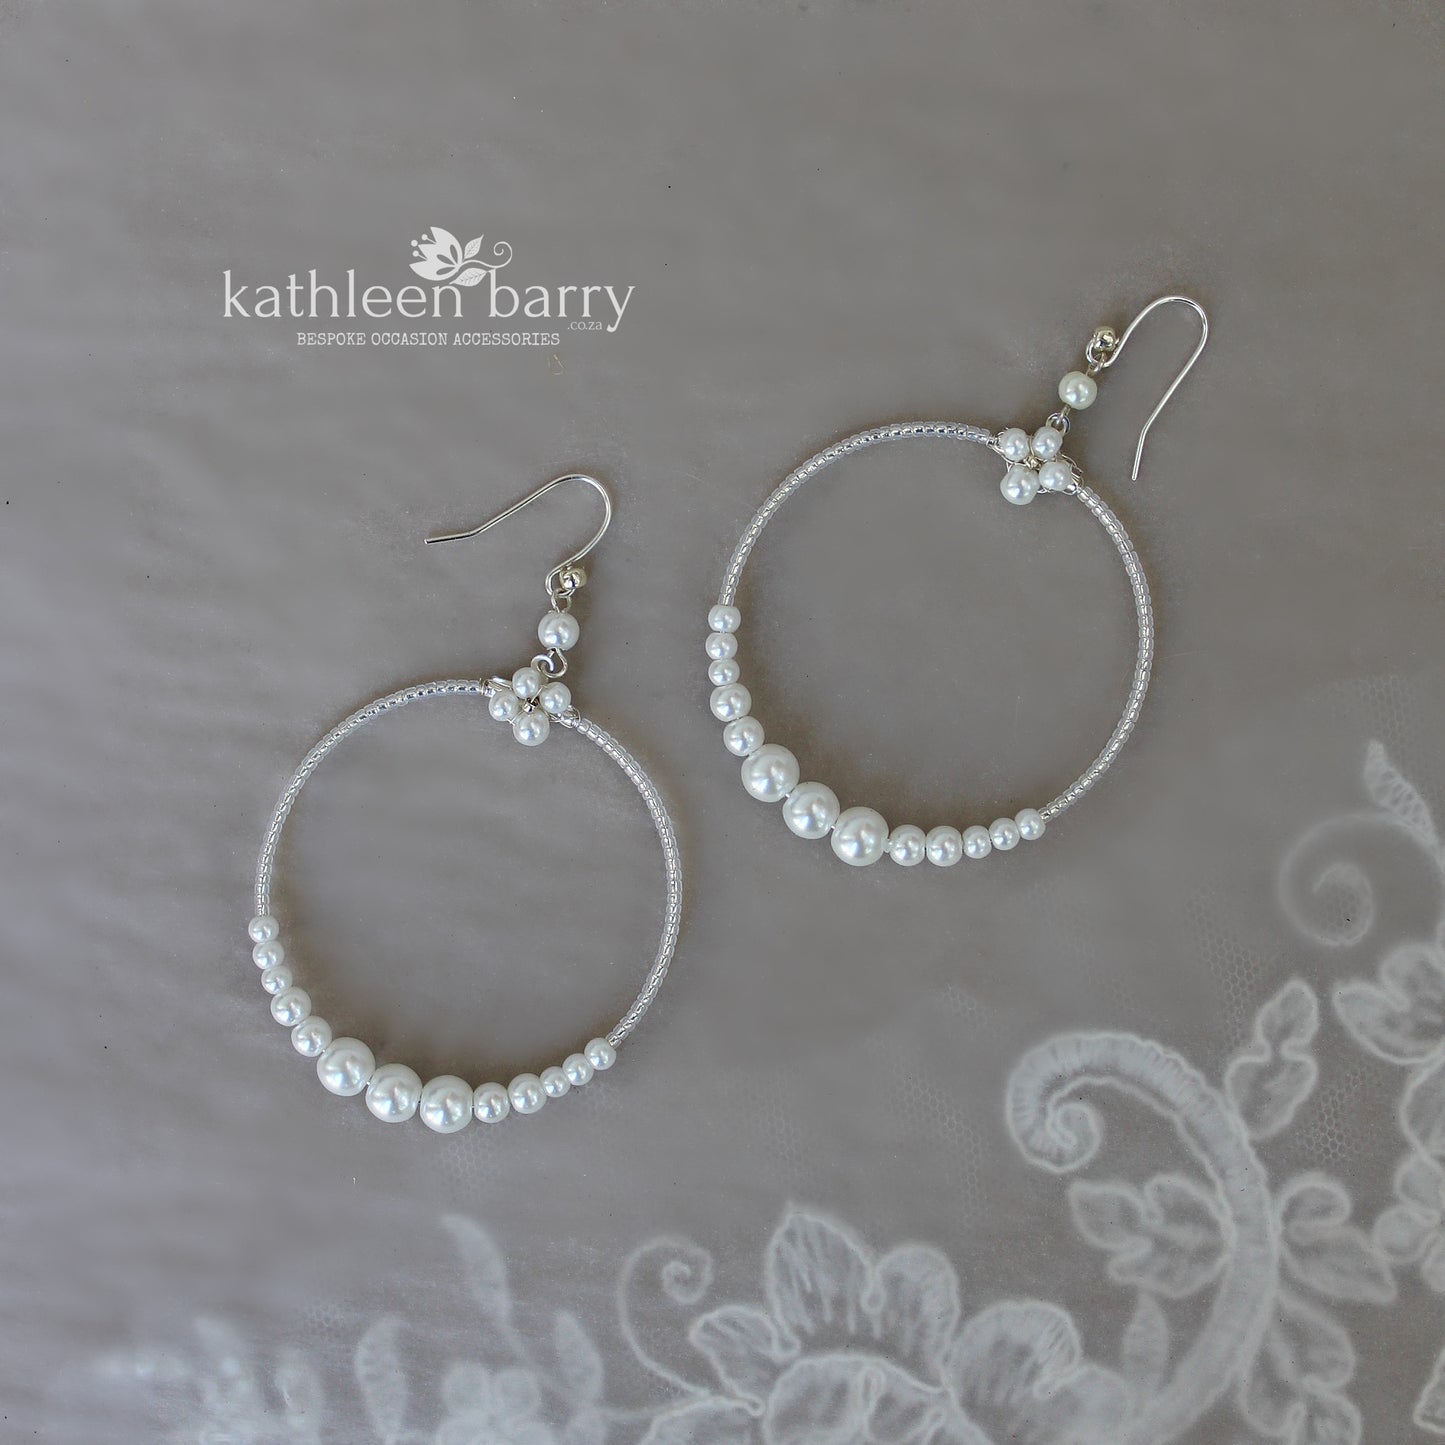 Julie pearl hoop earrings - Gold or silver - Pale pink, cream or white pearls